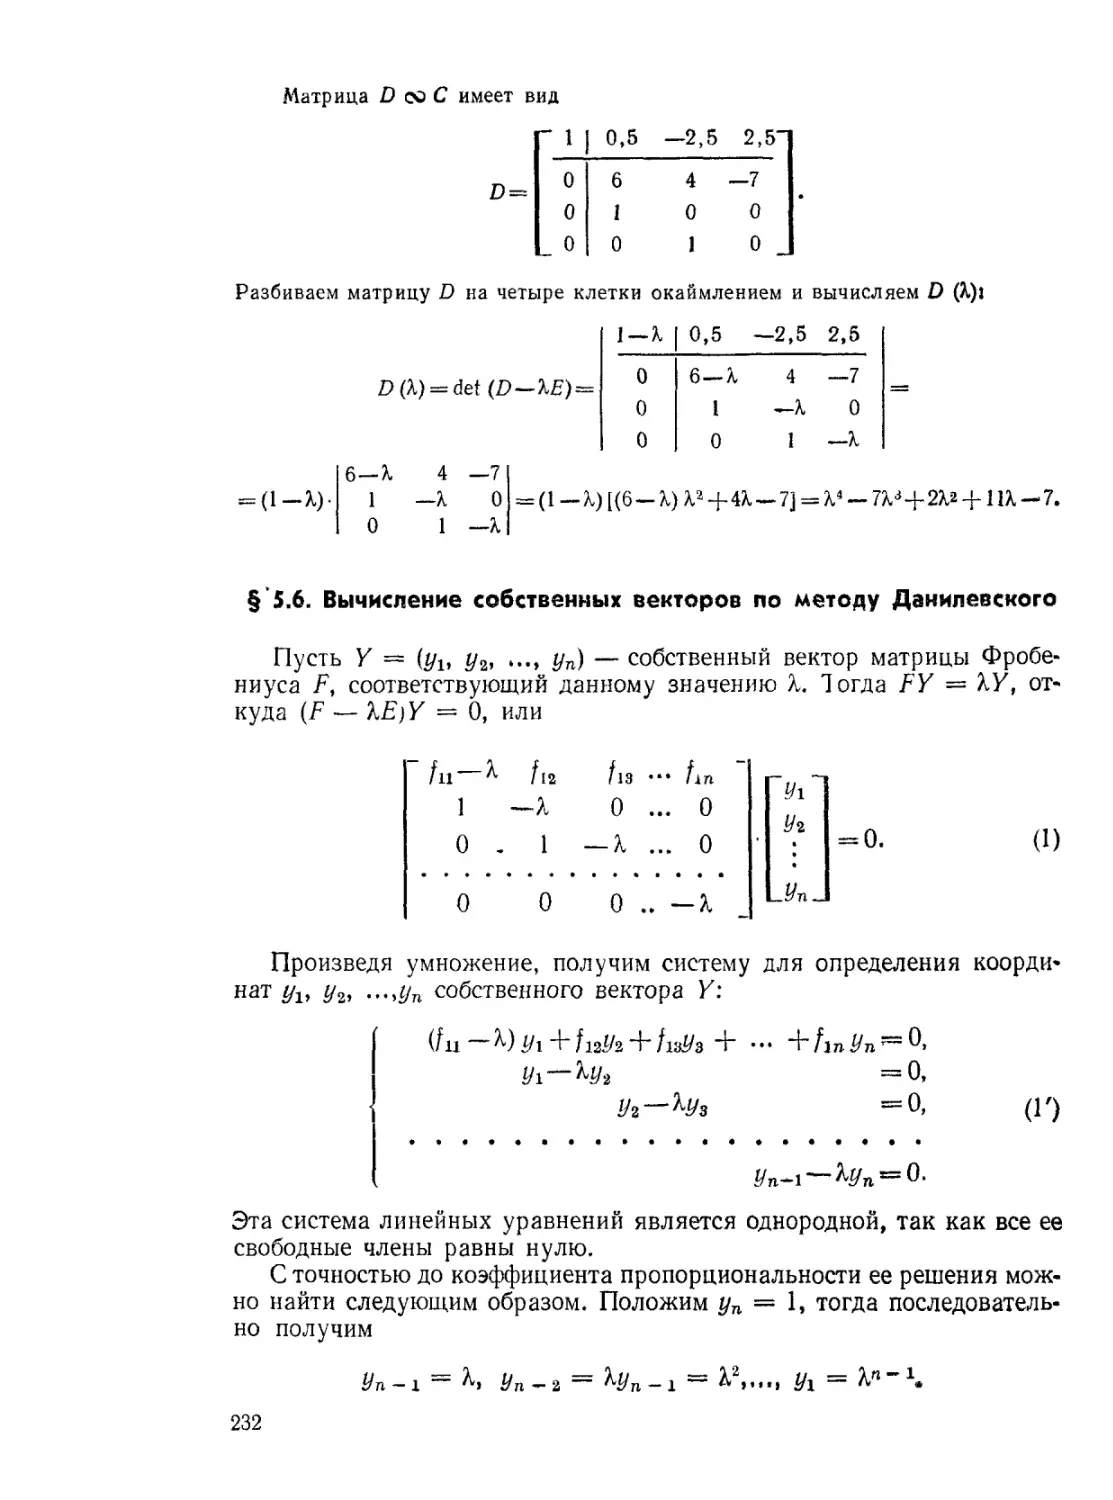 § 5.6. Вычисление собственных векторов по методу Данилевского